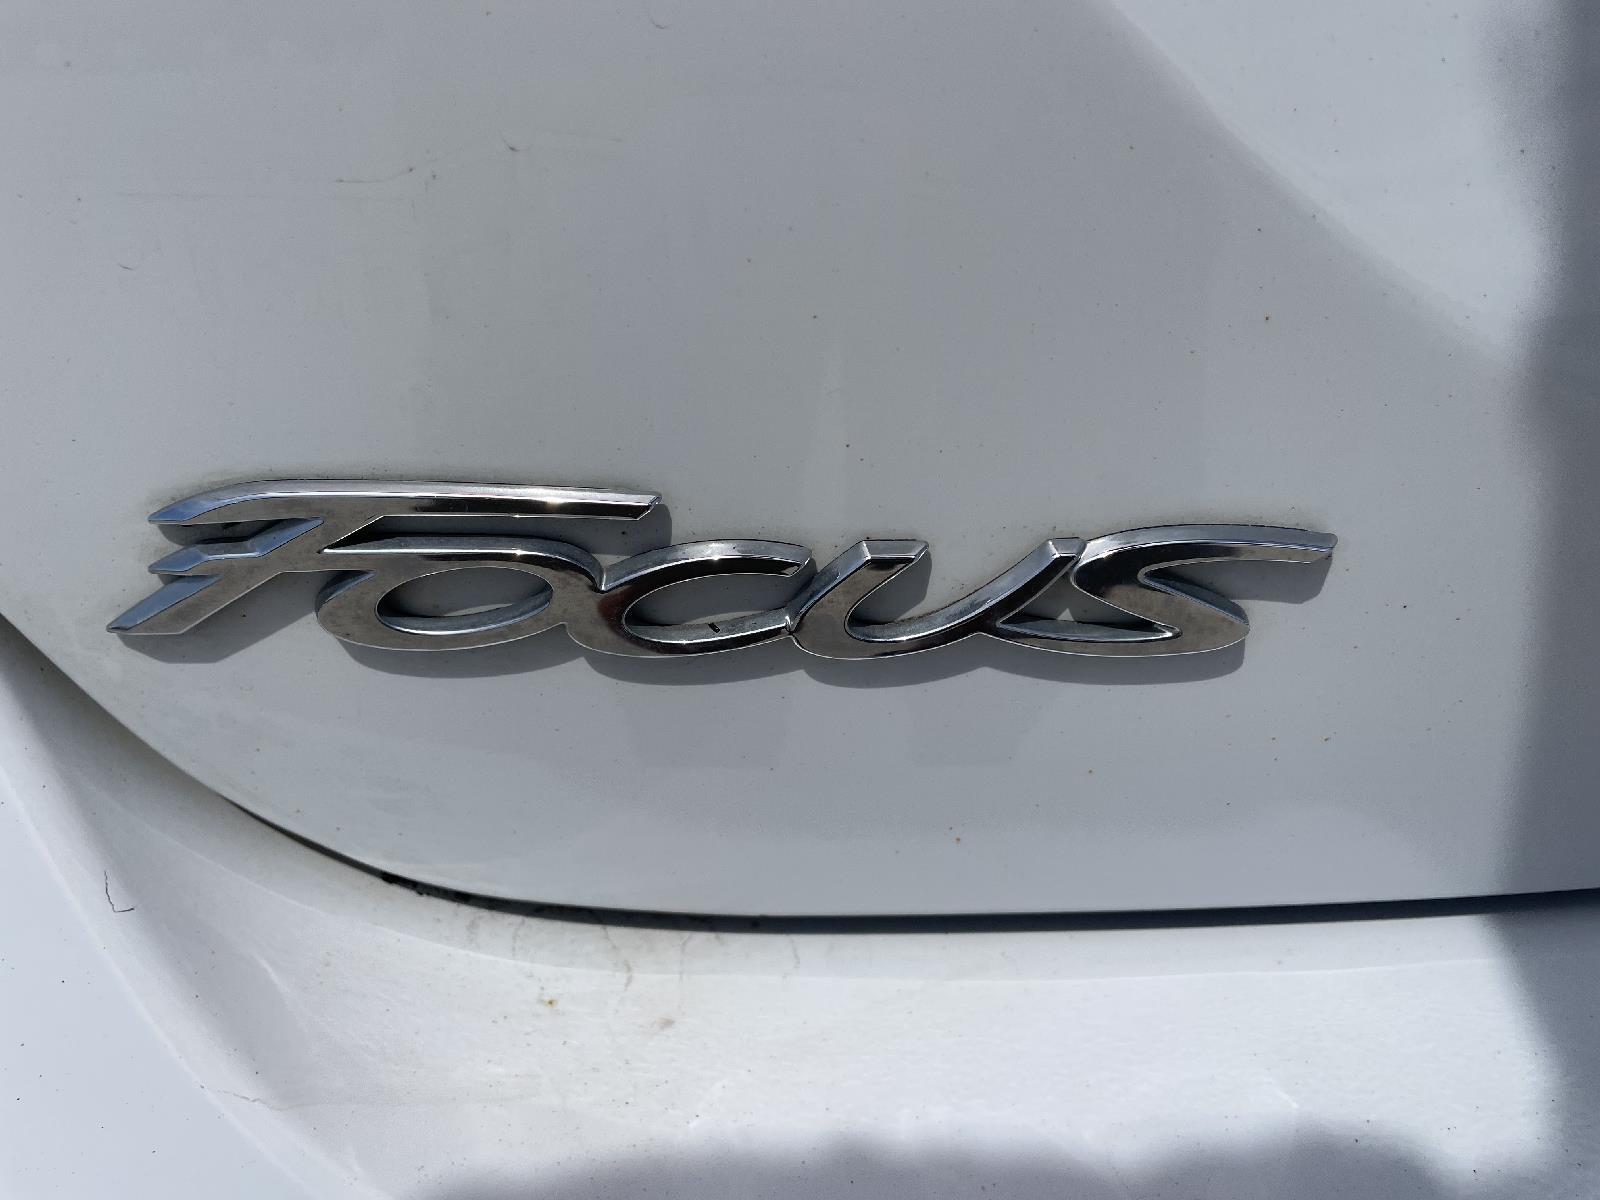 Used 2012 Ford Focus SE Sedan for sale in Lincoln NE